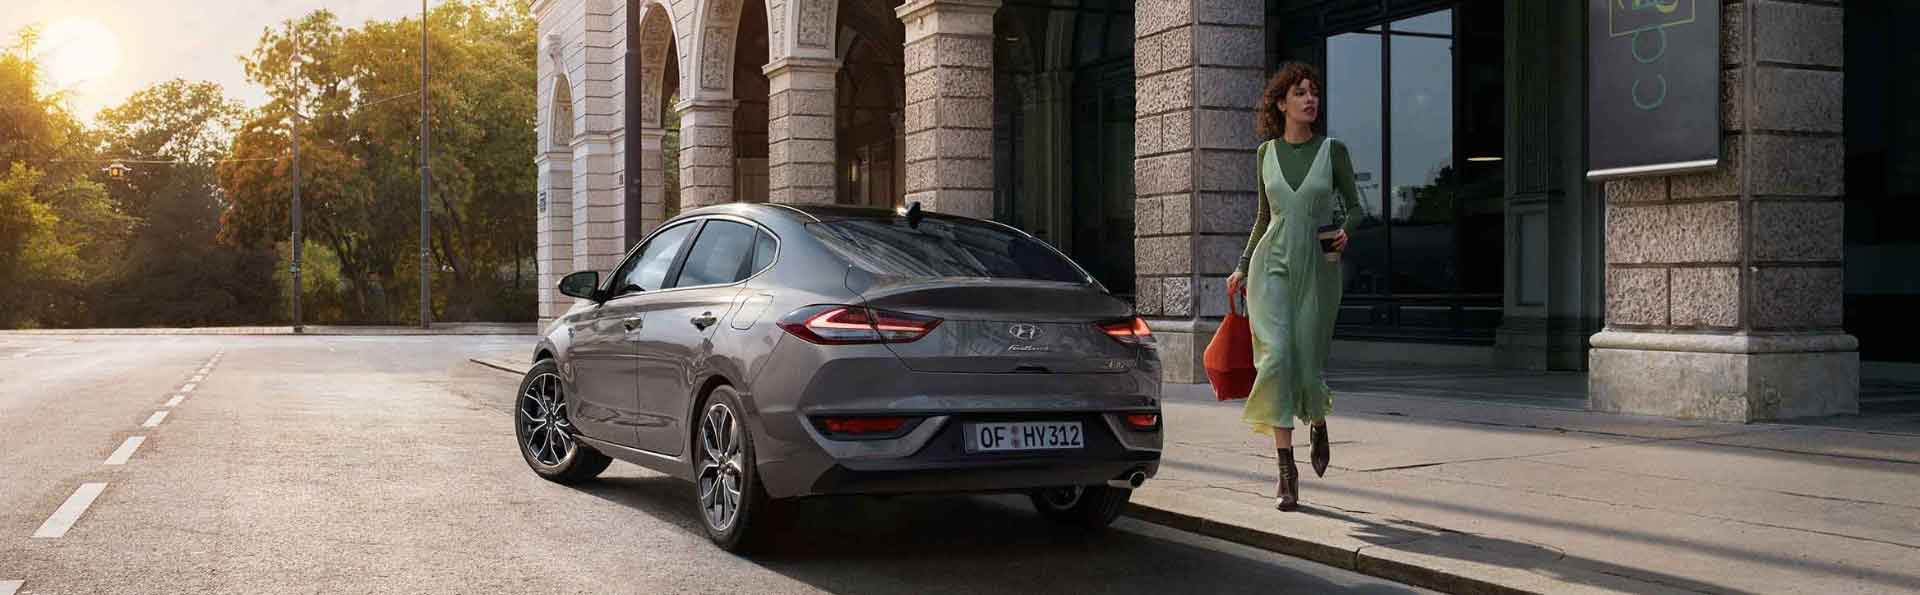 Hyundai-Abonnentin freut sich darüber mit Ihrem abonnierten Hyundai loszufahren